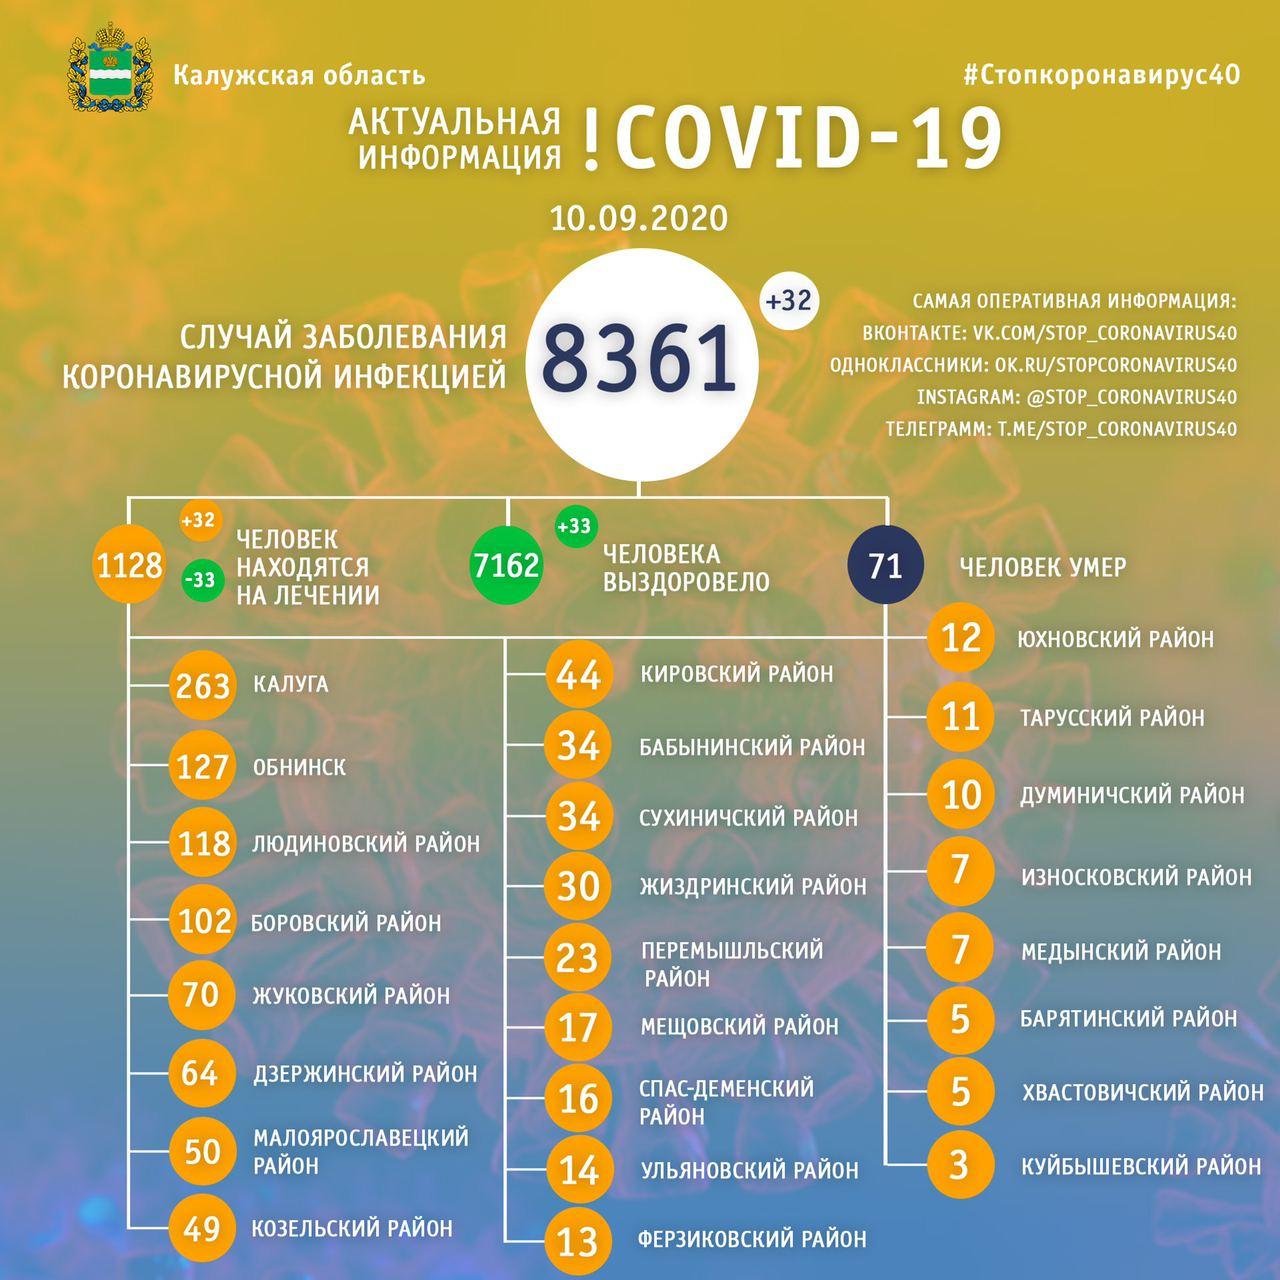 Официальная статистика по коронавирусу в Калужской области на 10 сентября 2020 года.